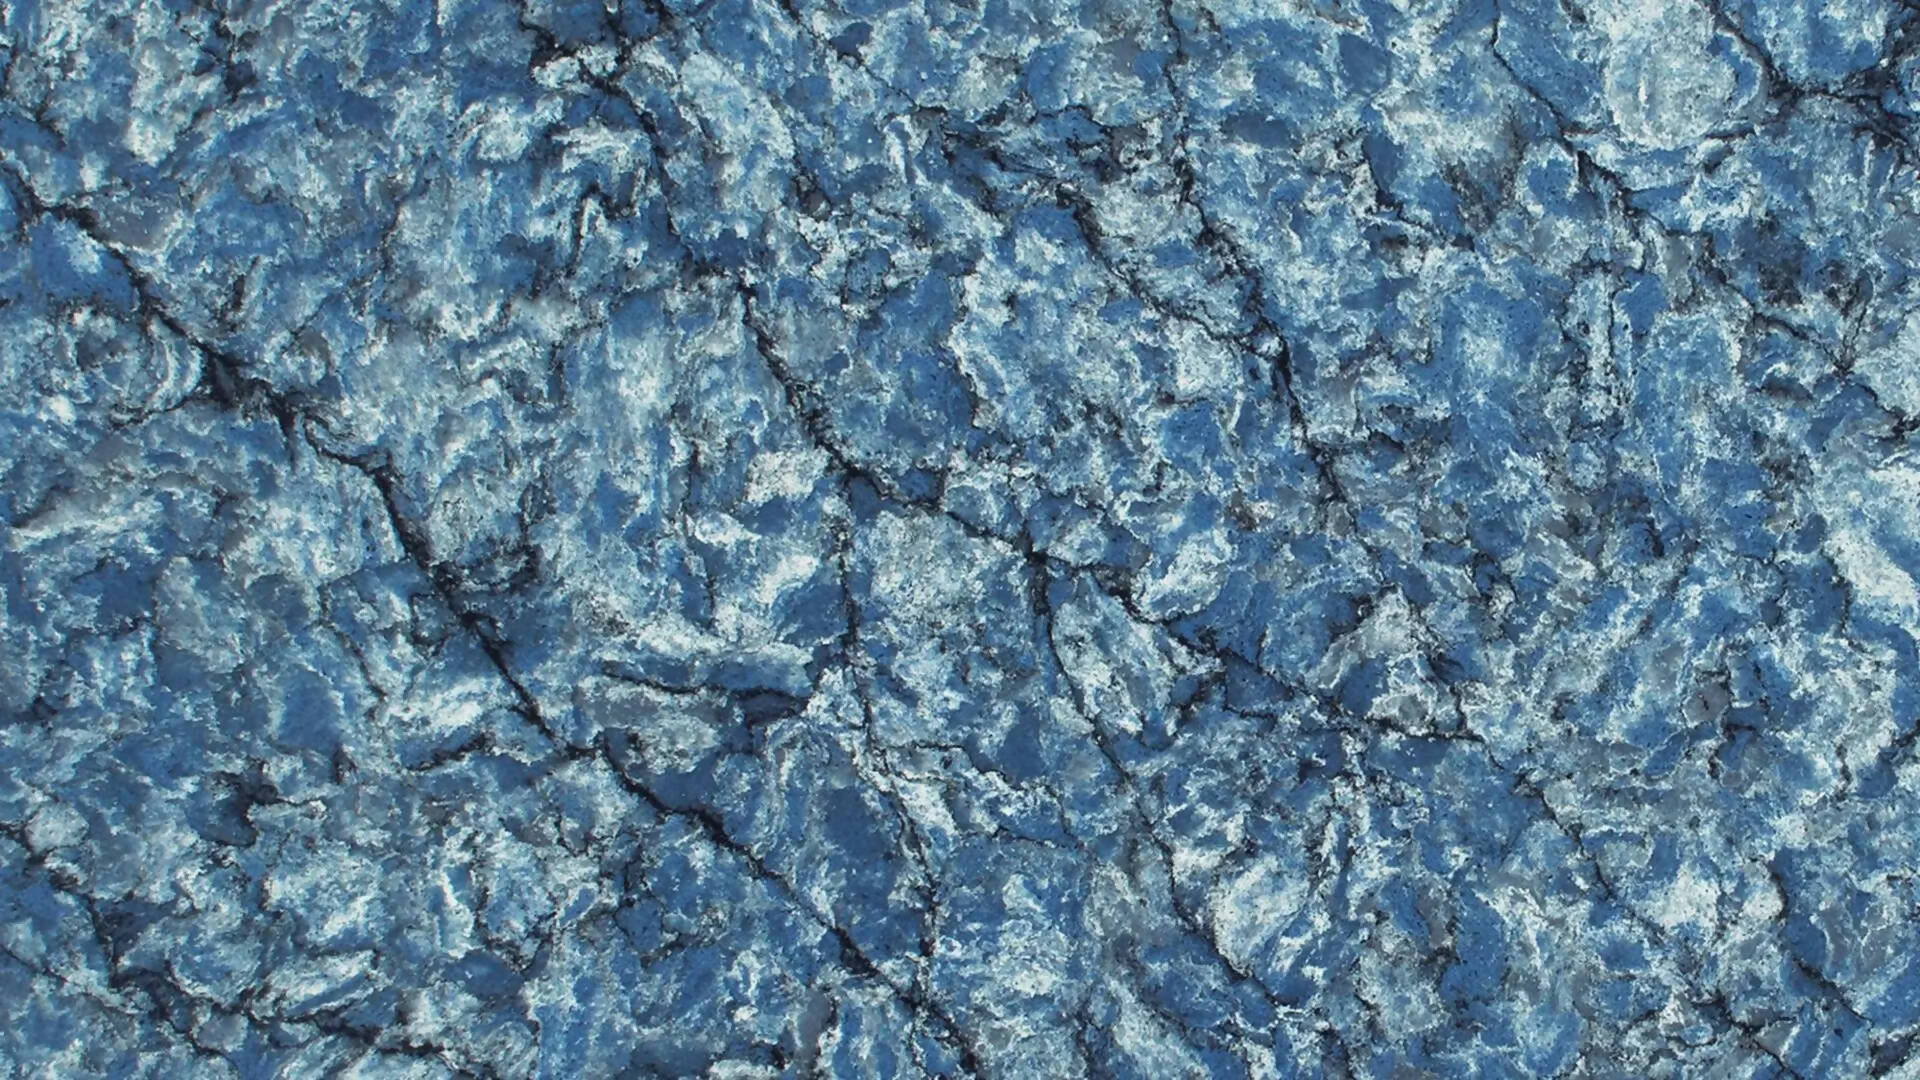 THUNDER BLUE COMPOSITE QUARTZ,Composite Quartz,Brachot,www.work-tops.com